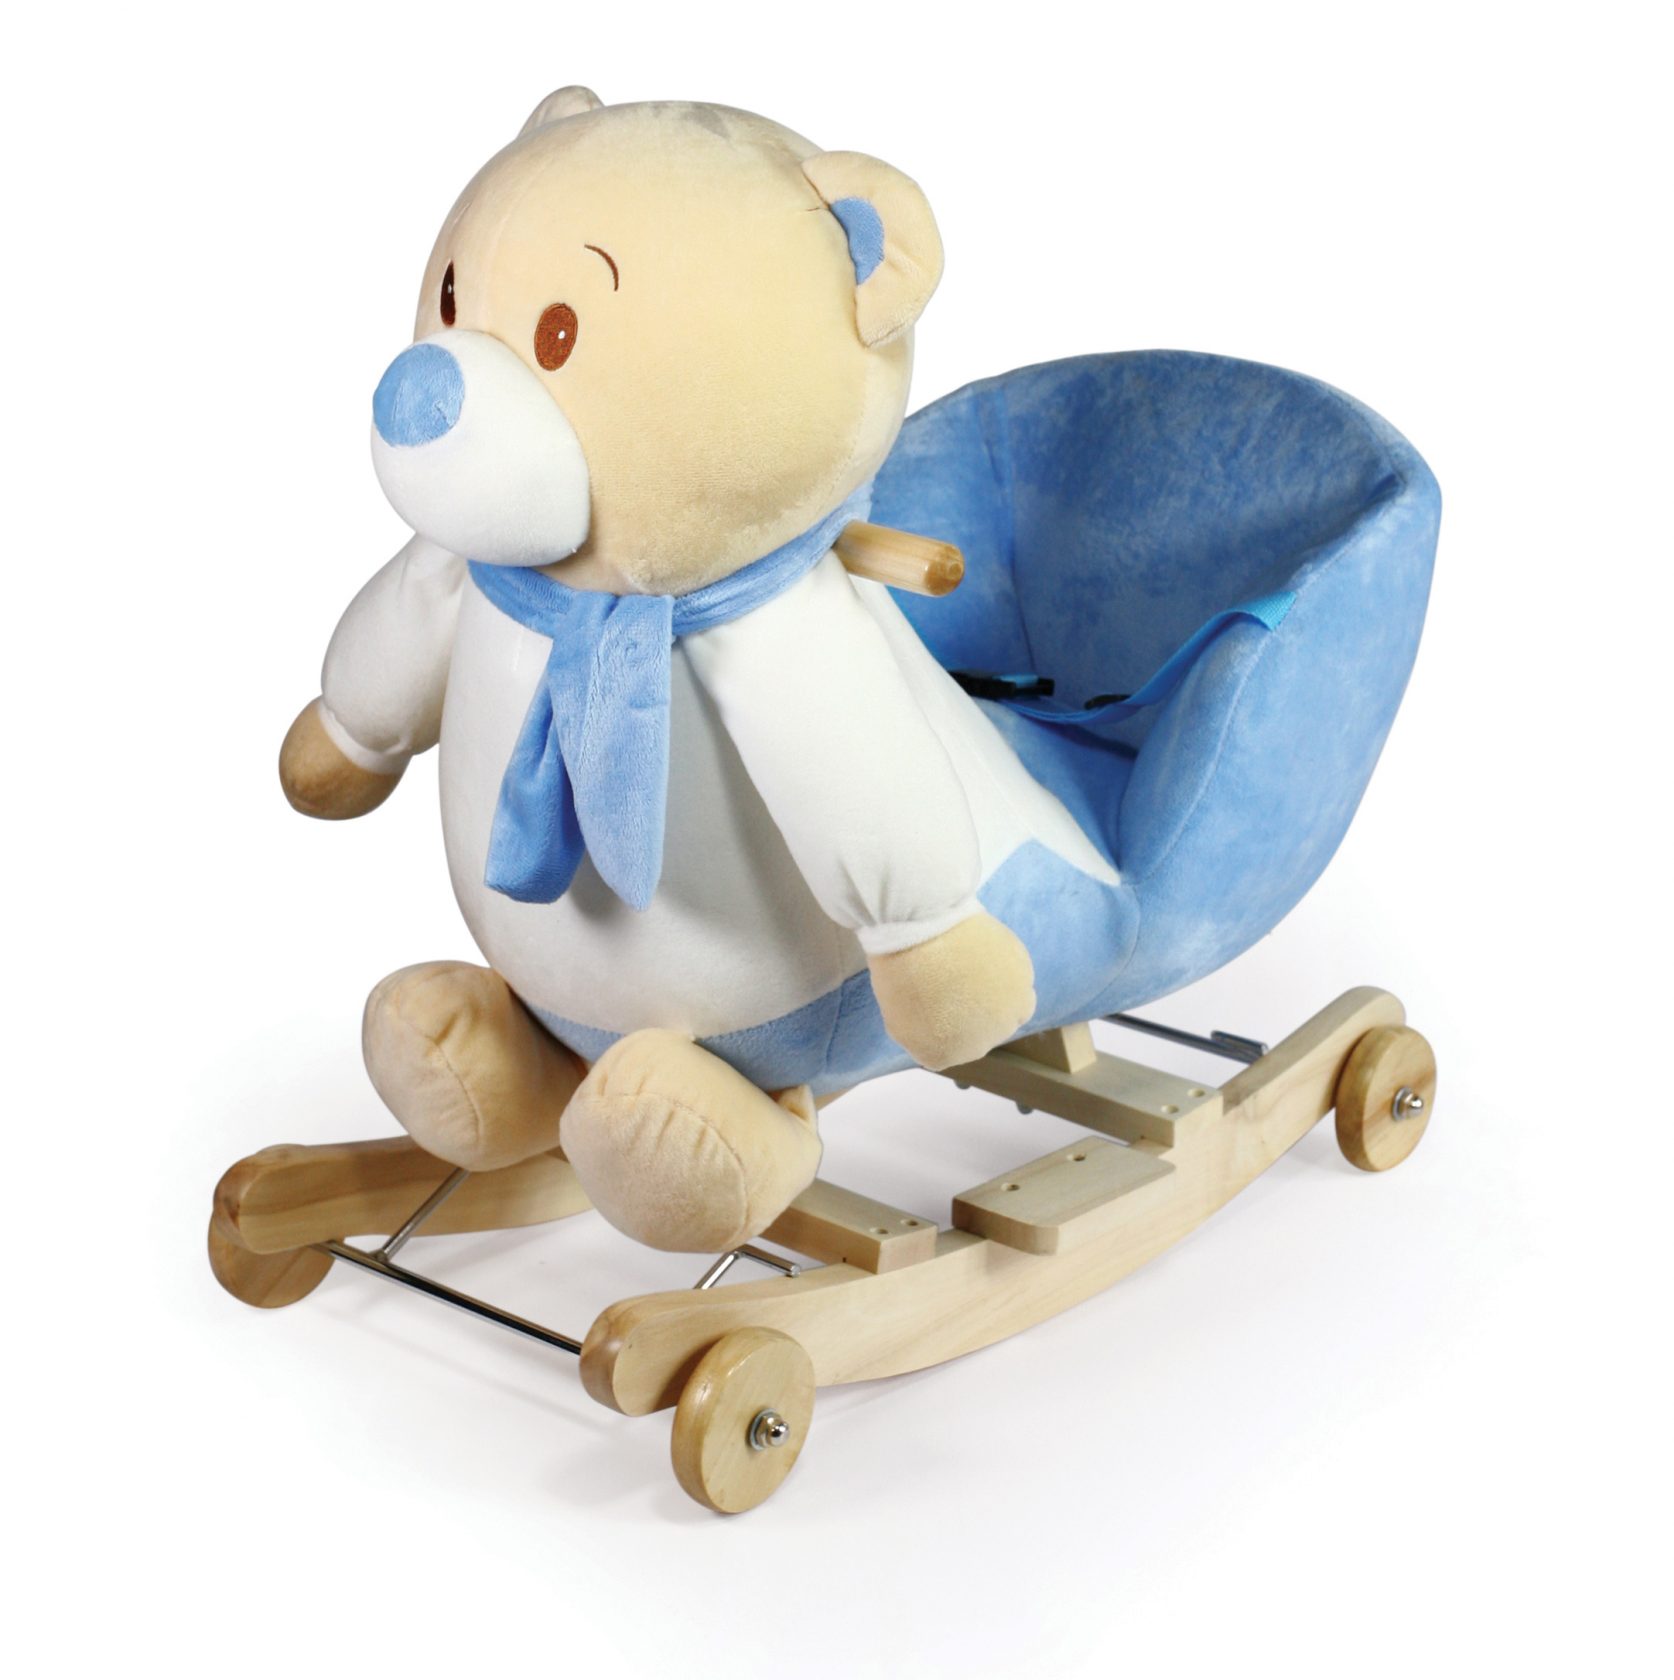 Κουνιστό αρκουδάκι σιελ Winnie με καθισματάκι με ζώνη ασφαλείας και ήχο. Οι ρόδες του βγαίνουν και γίνεται κουνιστό